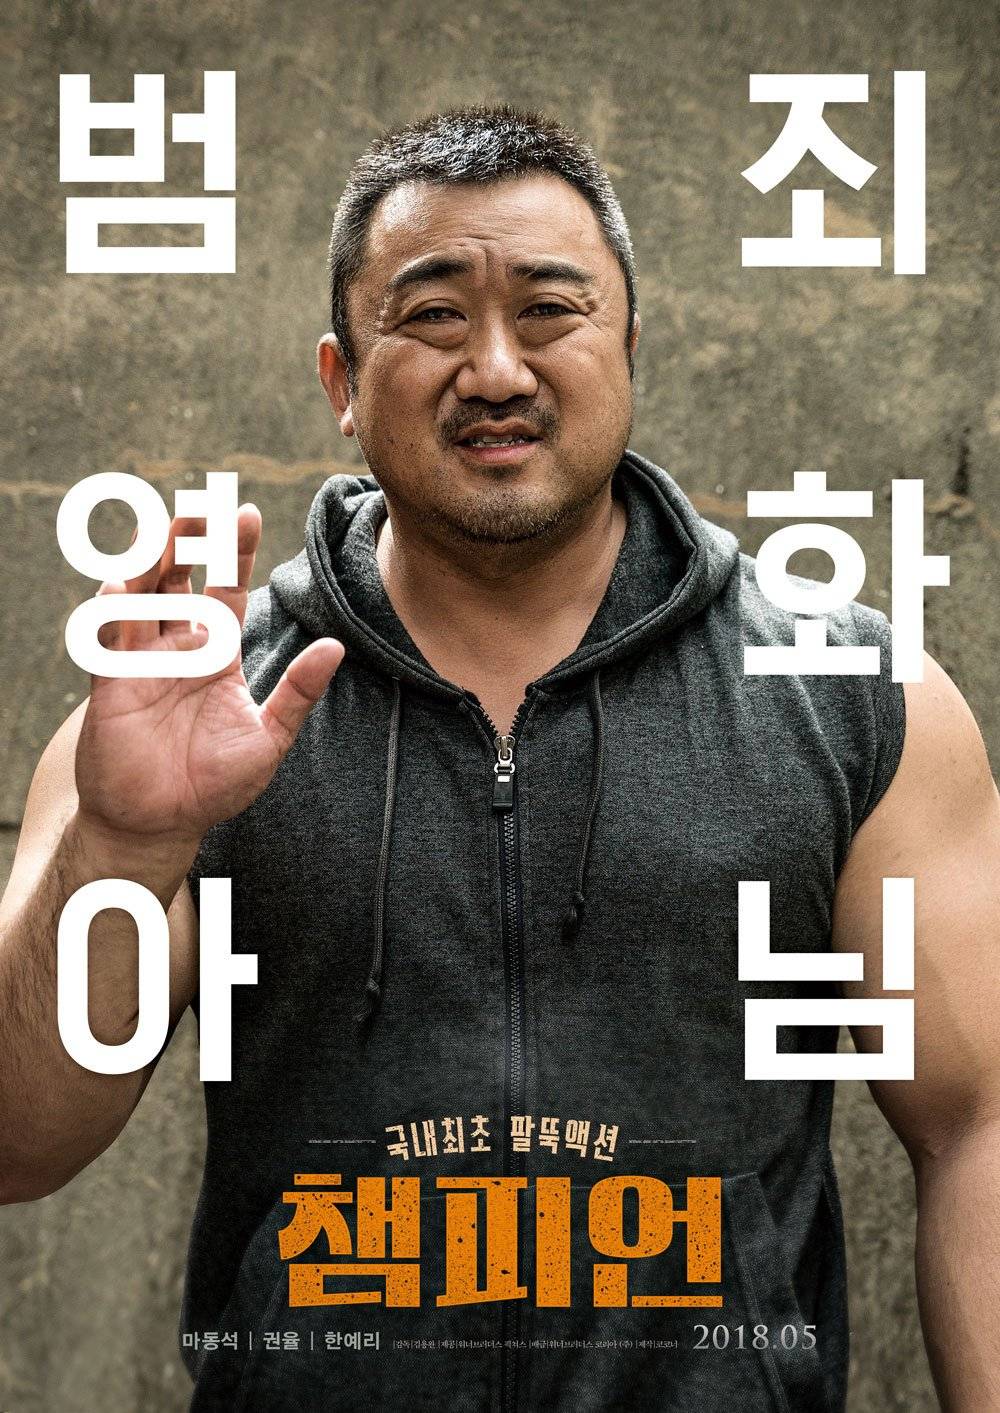 Trailer for Upcoming Korean Film Champion